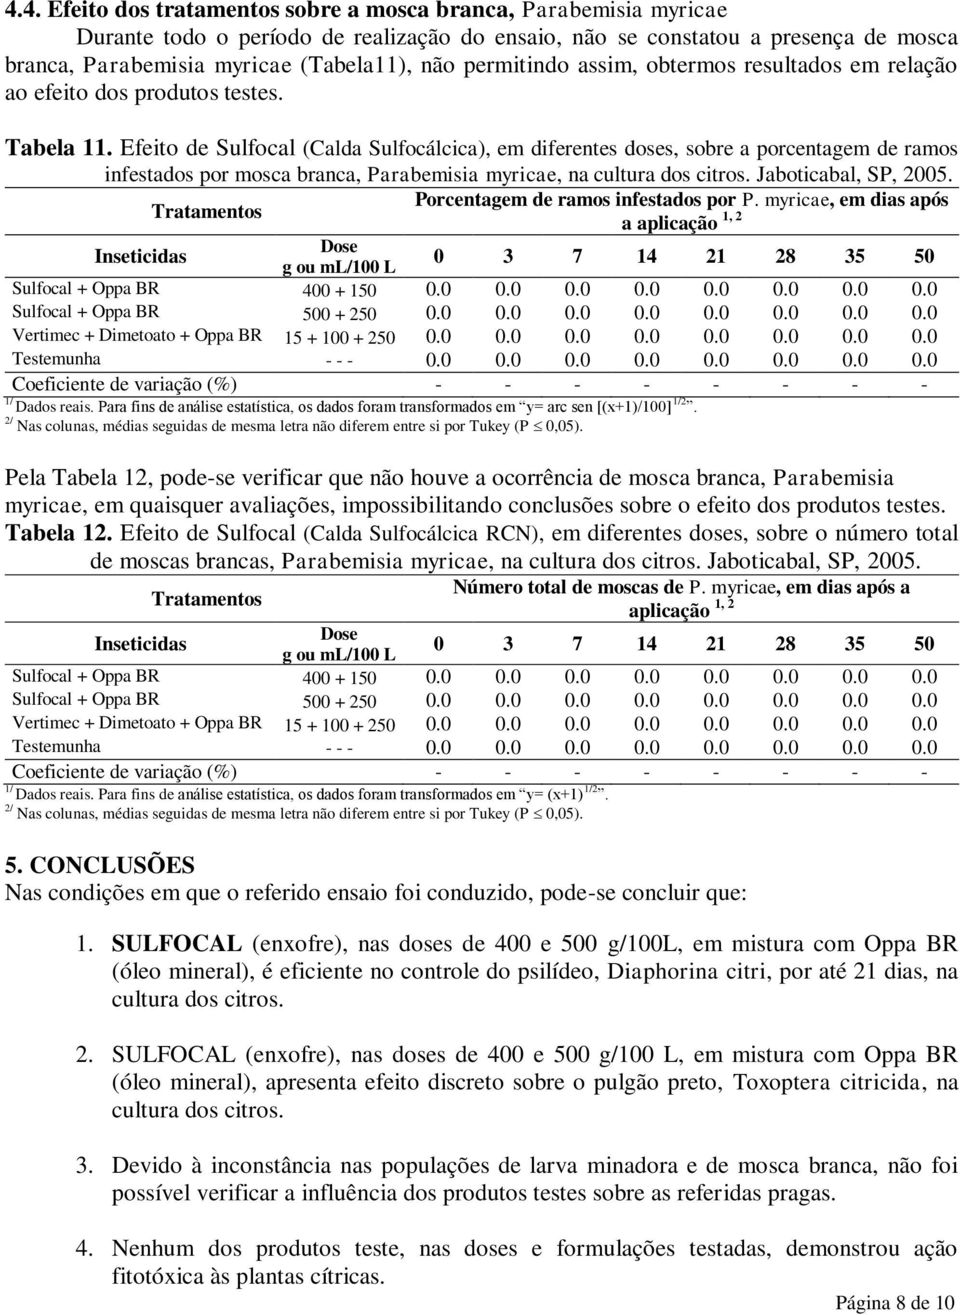 Efeito de Sulfocal (Calda Sulfocálcica), em diferentes doses, sobre a porcentagem de ramos infestados por mosca branca, Parabemisia myricae, na cultura dos citros. Jaboticabal, SP, 2005.